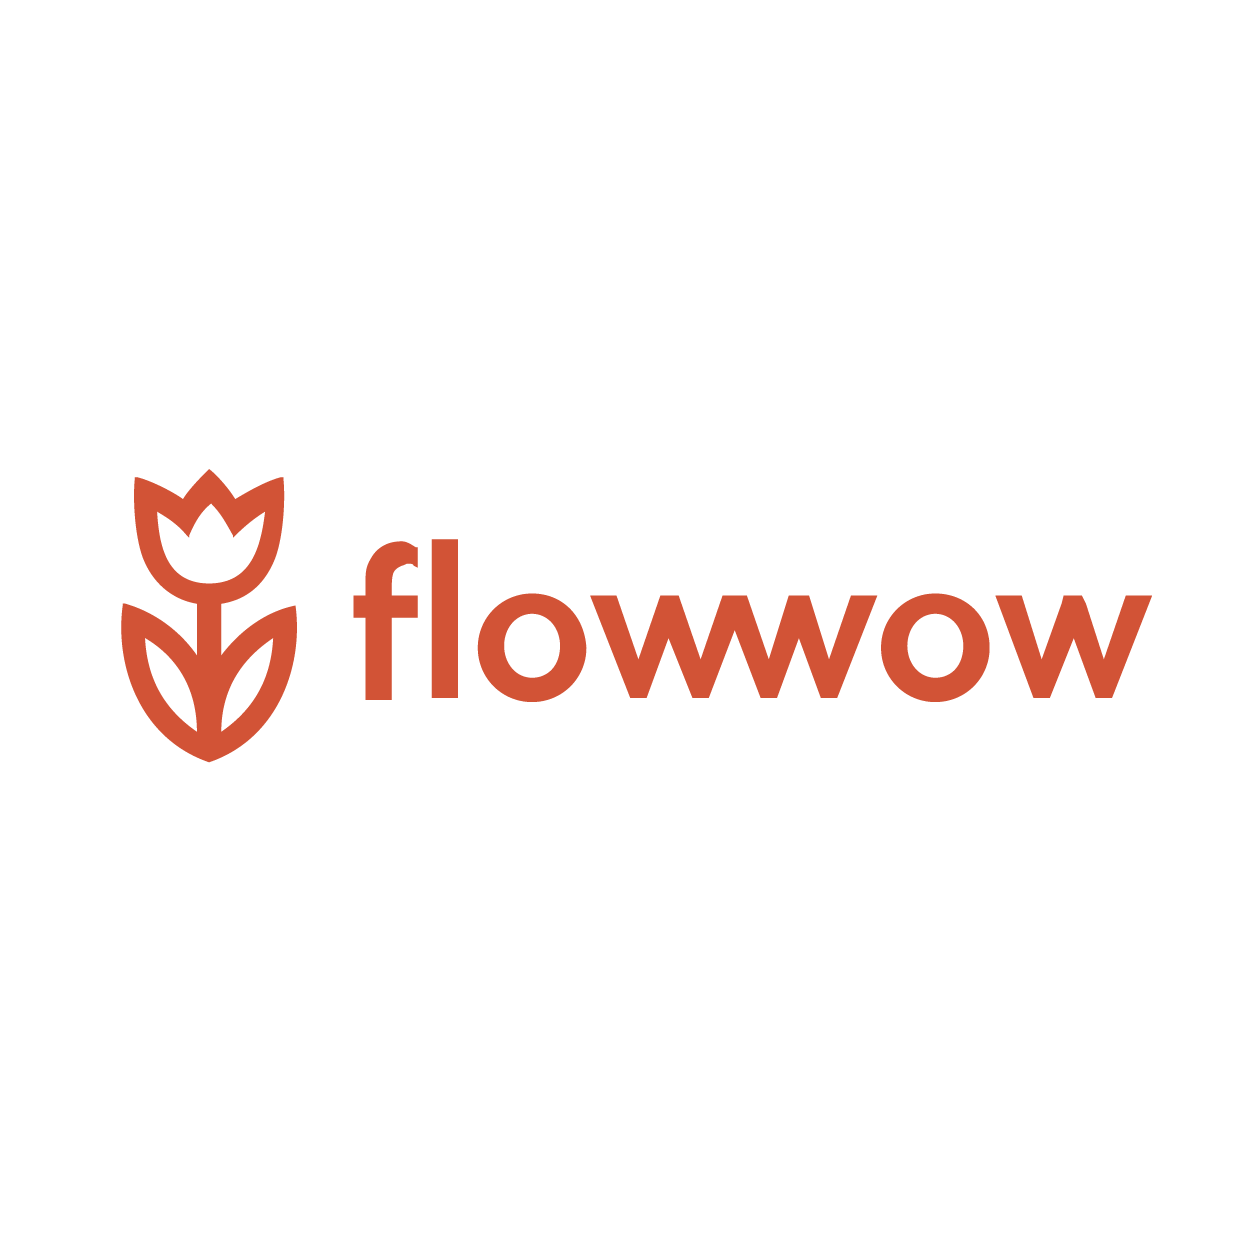 Фловов. Flowwow. Flowwow logo. ФЛАУ вау. ФЛАУВАУ логотип.